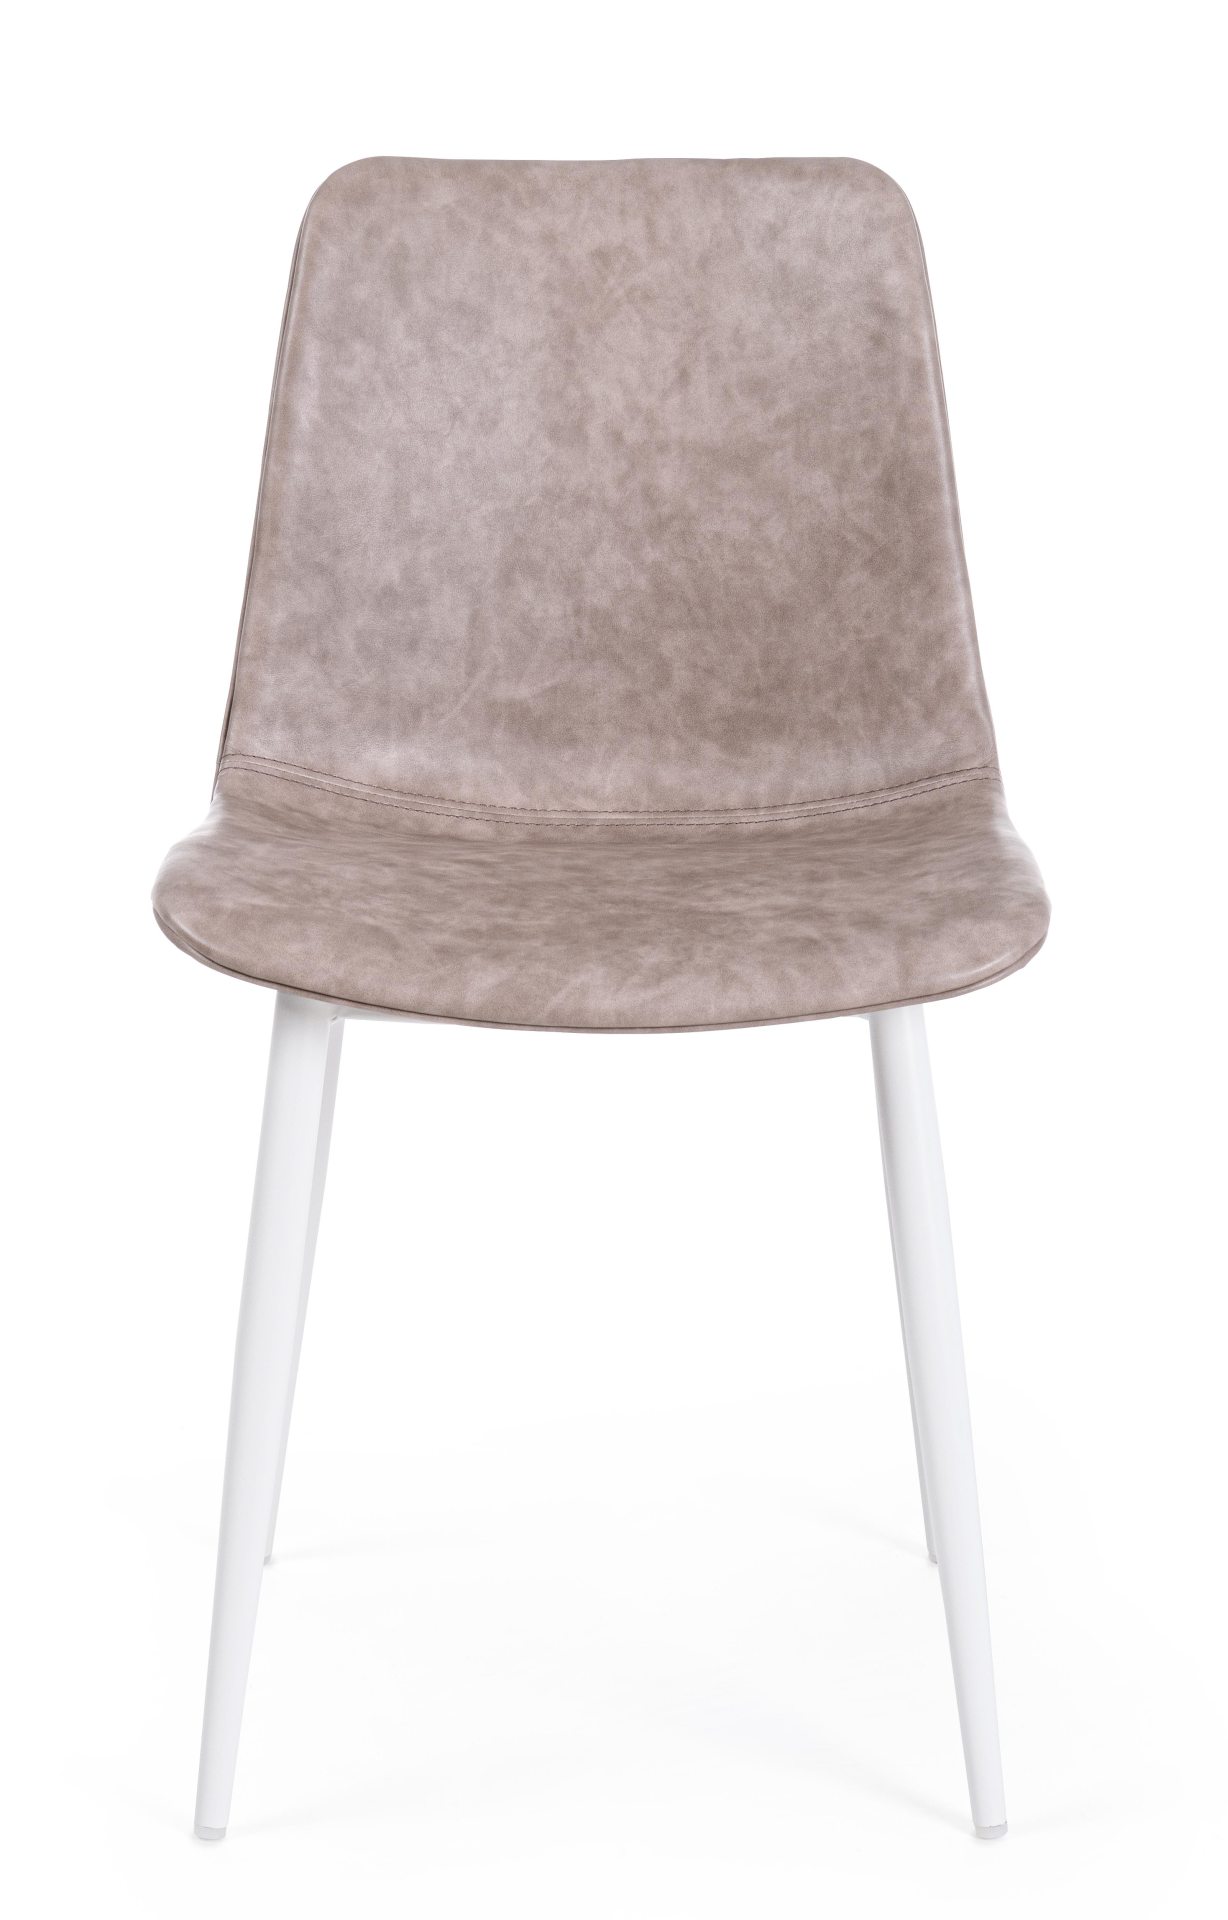 Der Esszimmerstuhl Kyra überzeugt mit seinem modernen Design. Gefertigt wurde der Stuhl aus Kunstleder, welcher einen Beige Farbton besitzt. Das Gestell ist aus Metall und ist Weiß. Die Sitzhöhe beträgt 44 cm.